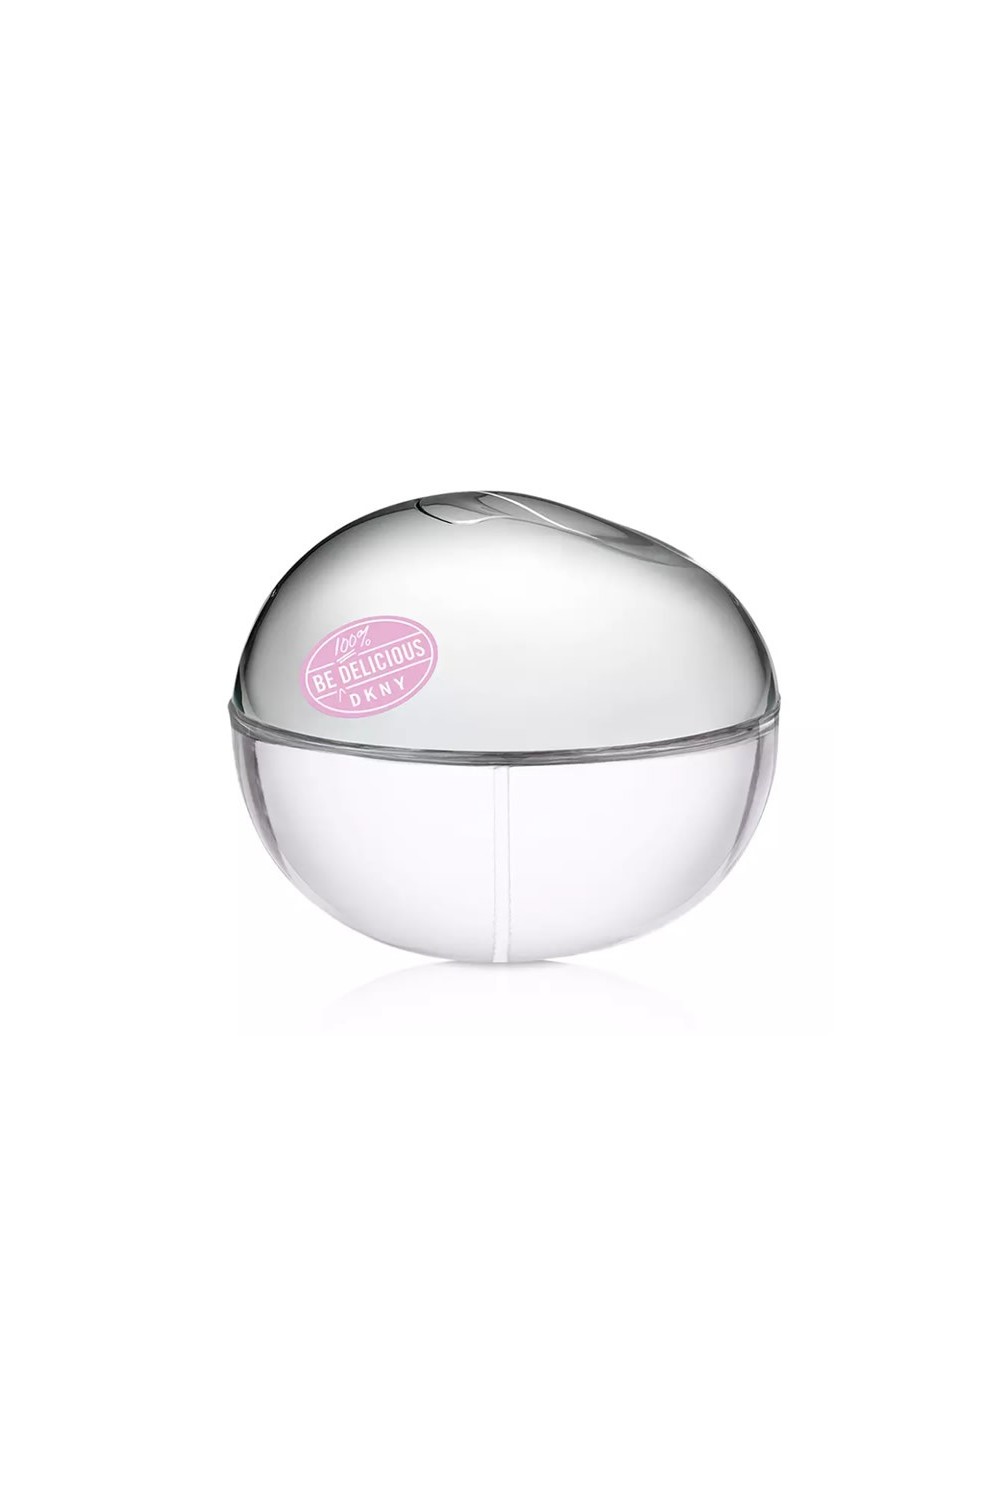 Donna Karan Be 100% Delicious Eau De Perfume Spray 50ml